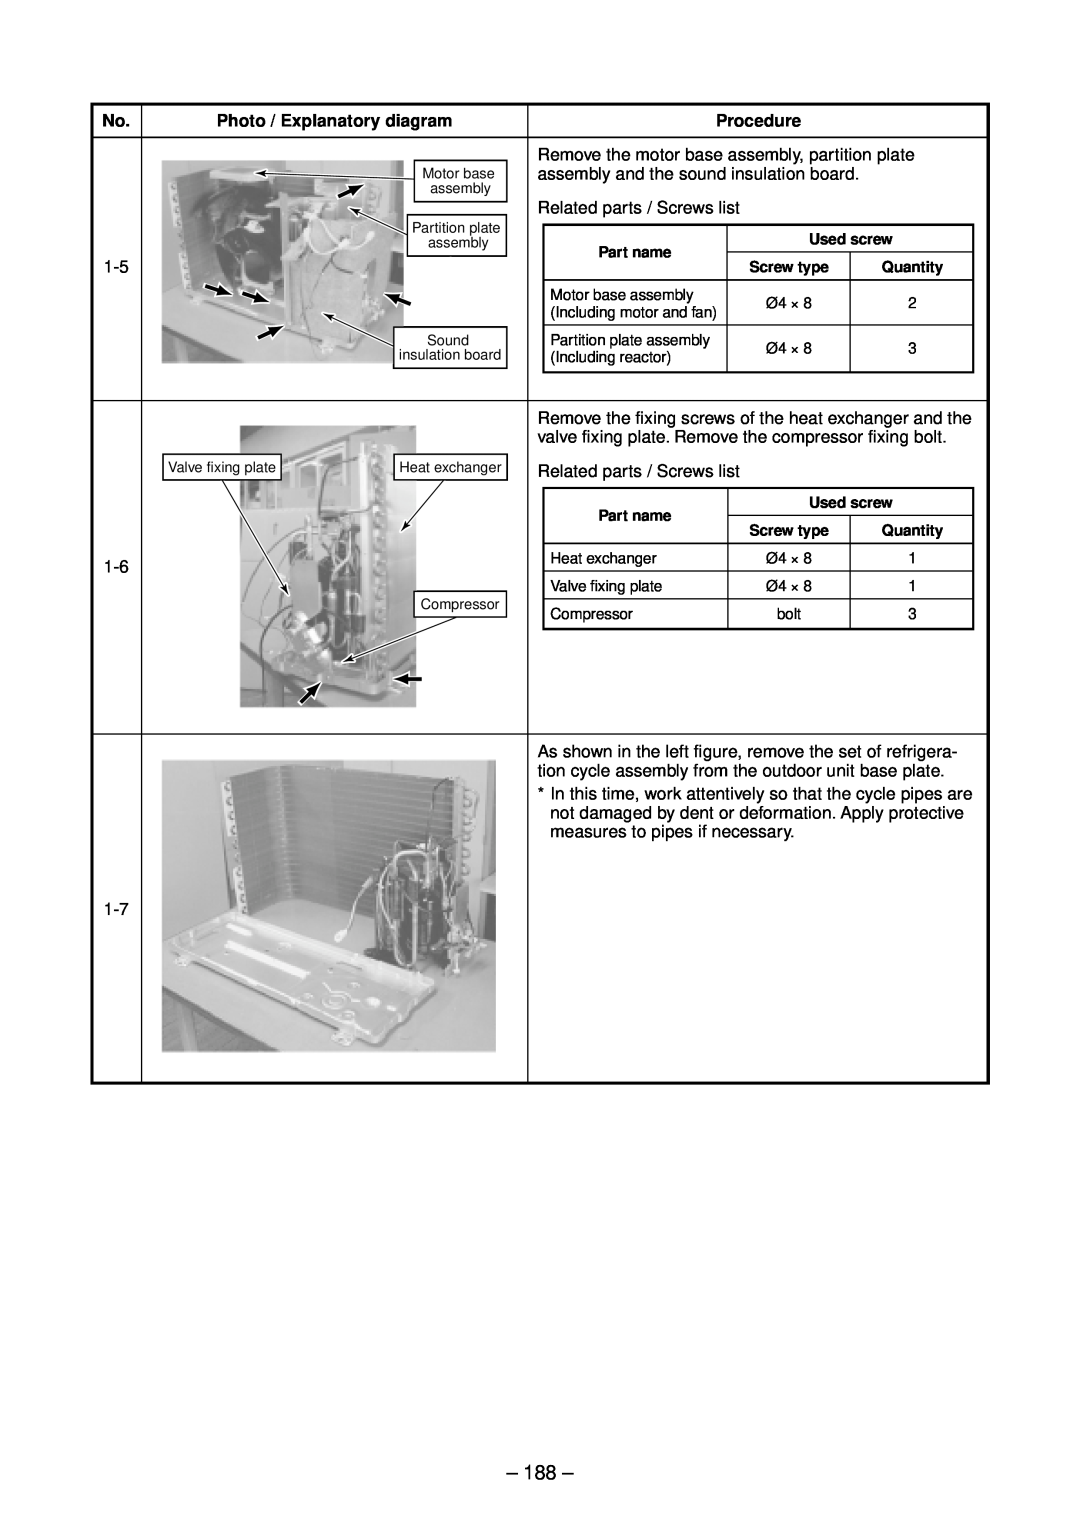 Toshiba RAV-SM1102UT-E, RAV-SM1402UT-E, RAV-SM802UT-E, RAV-SM562UT-E 188, Photo / Explanatory diagram, Procedure 